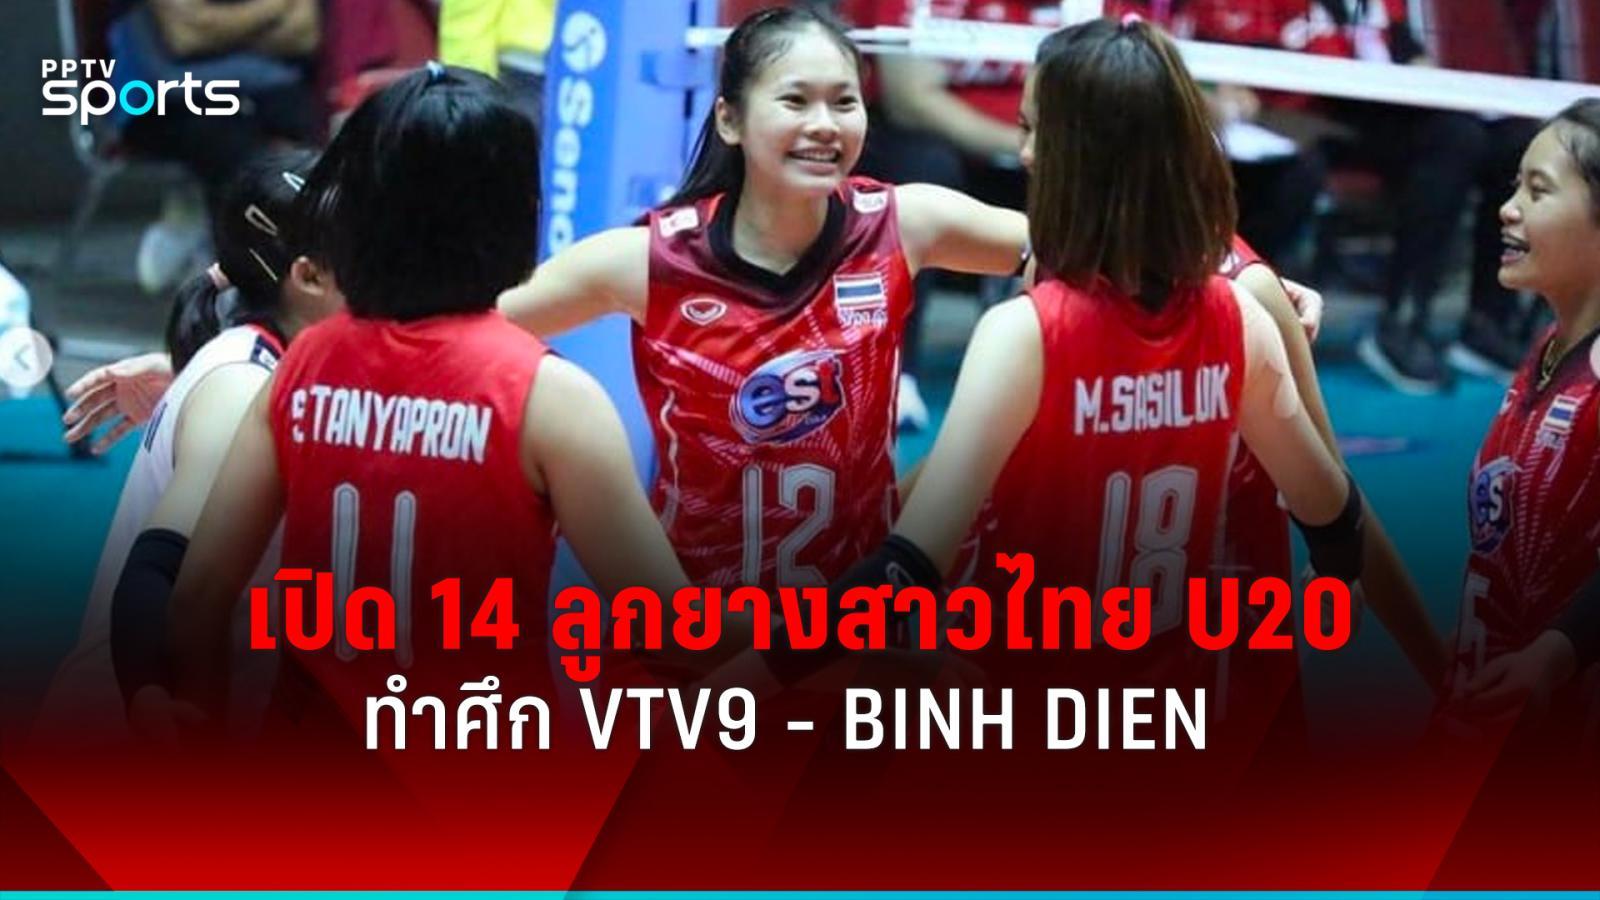 เปิดรายชื่อ 14 วอลเลย์บอลหญิงไทย u20 ทำศึก vtv9-binh dien เวียดนาม